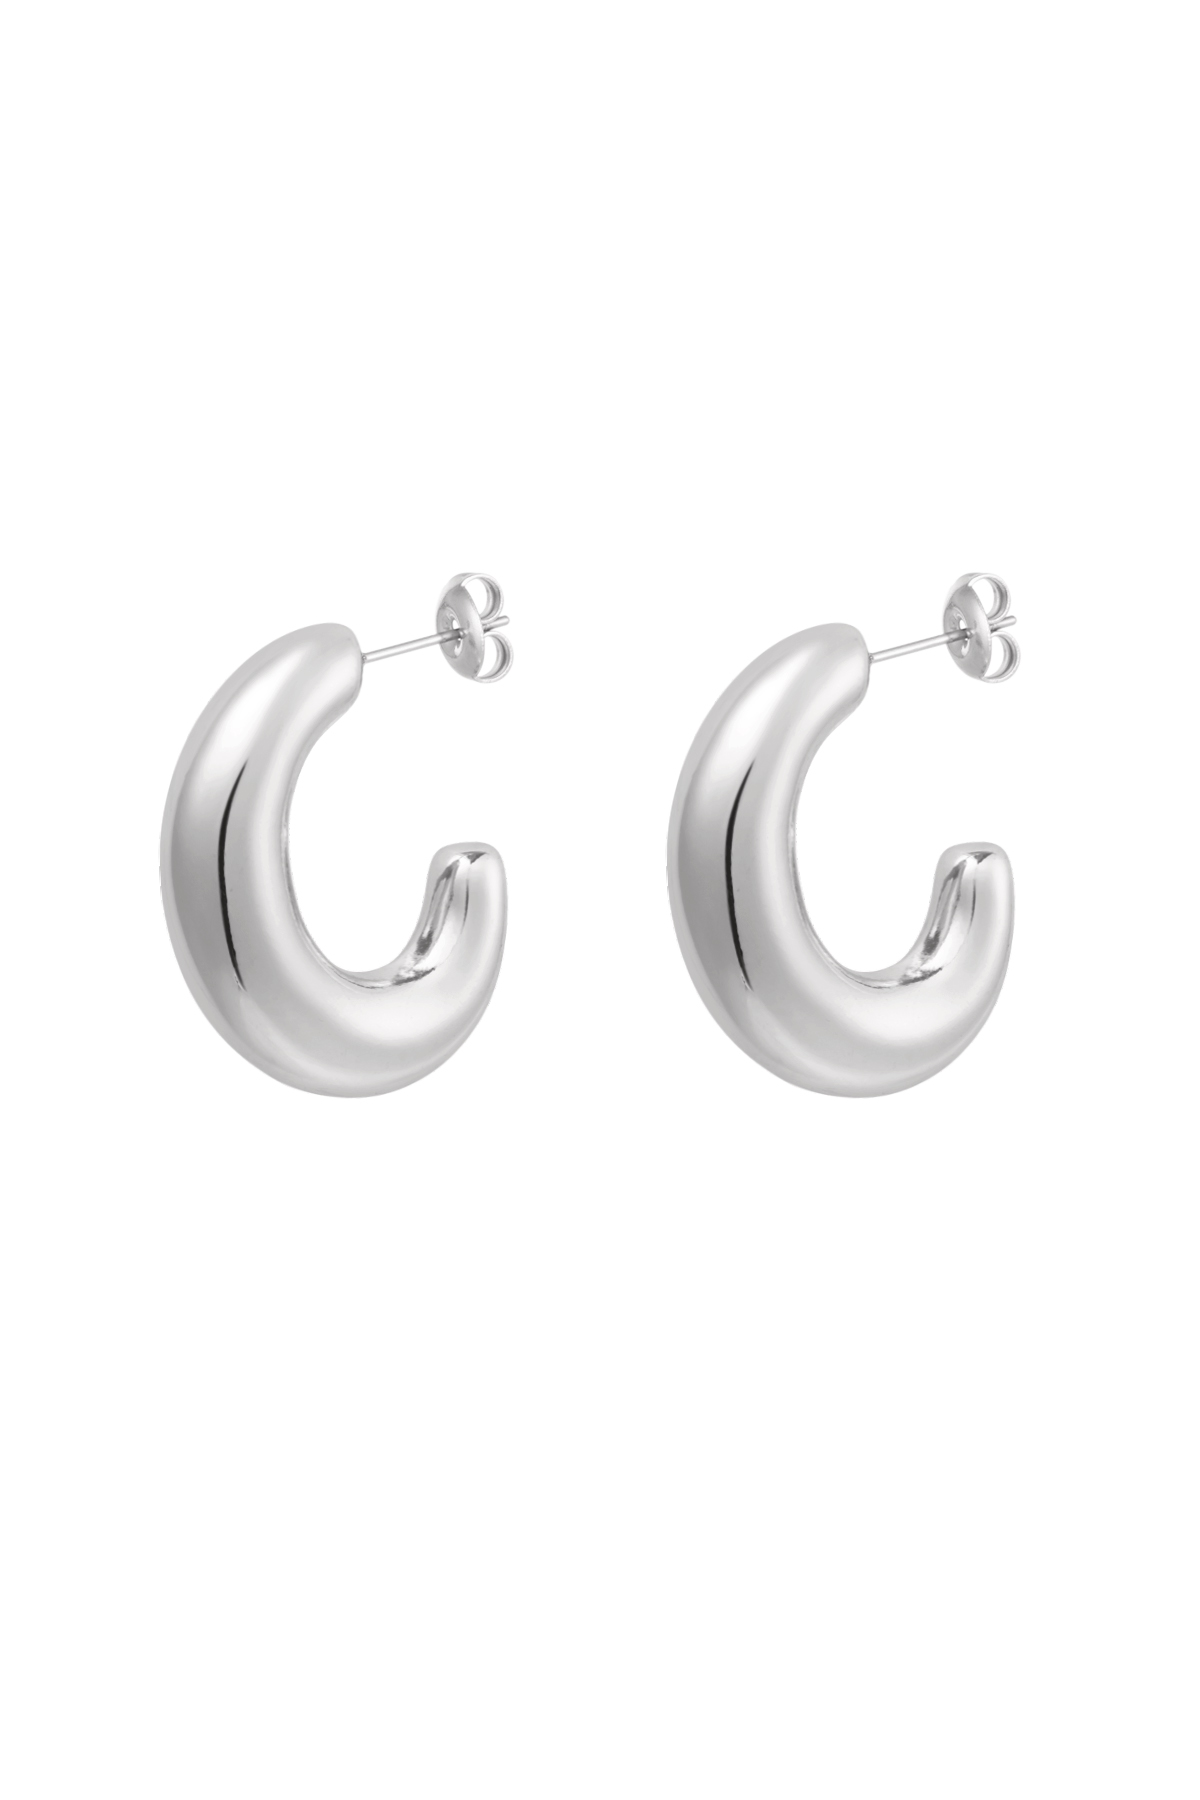 Earrings classy half moon - silver h5 